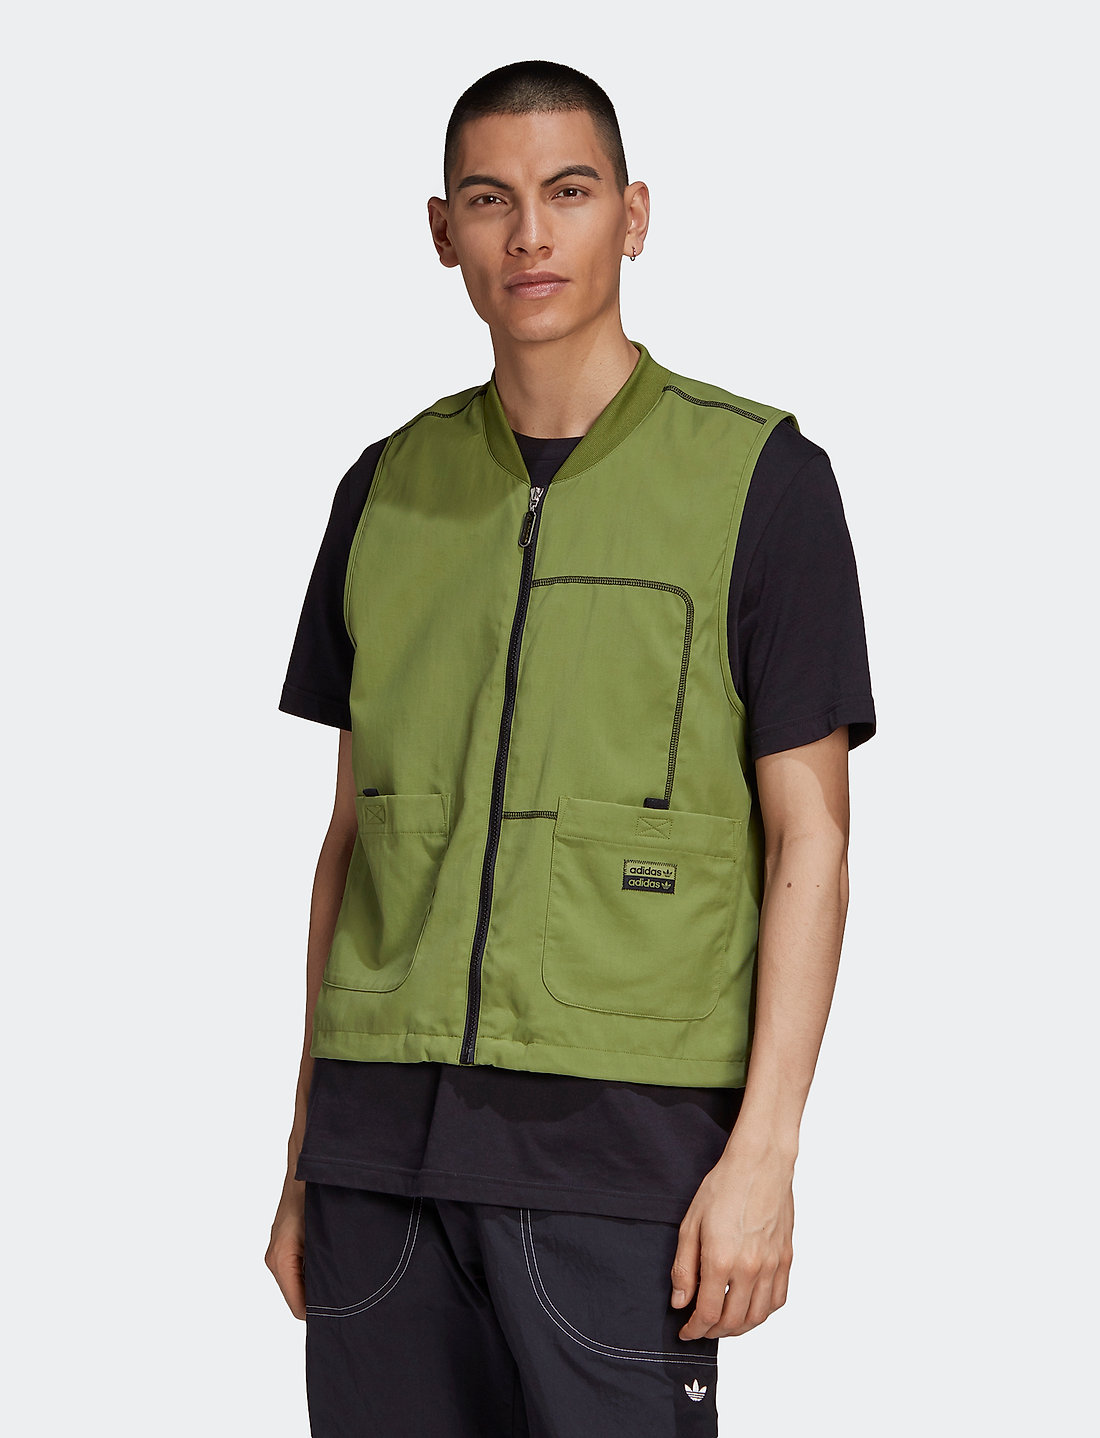 adidas Originals Blkout Vest – jackets & coats – shop at Booztlet